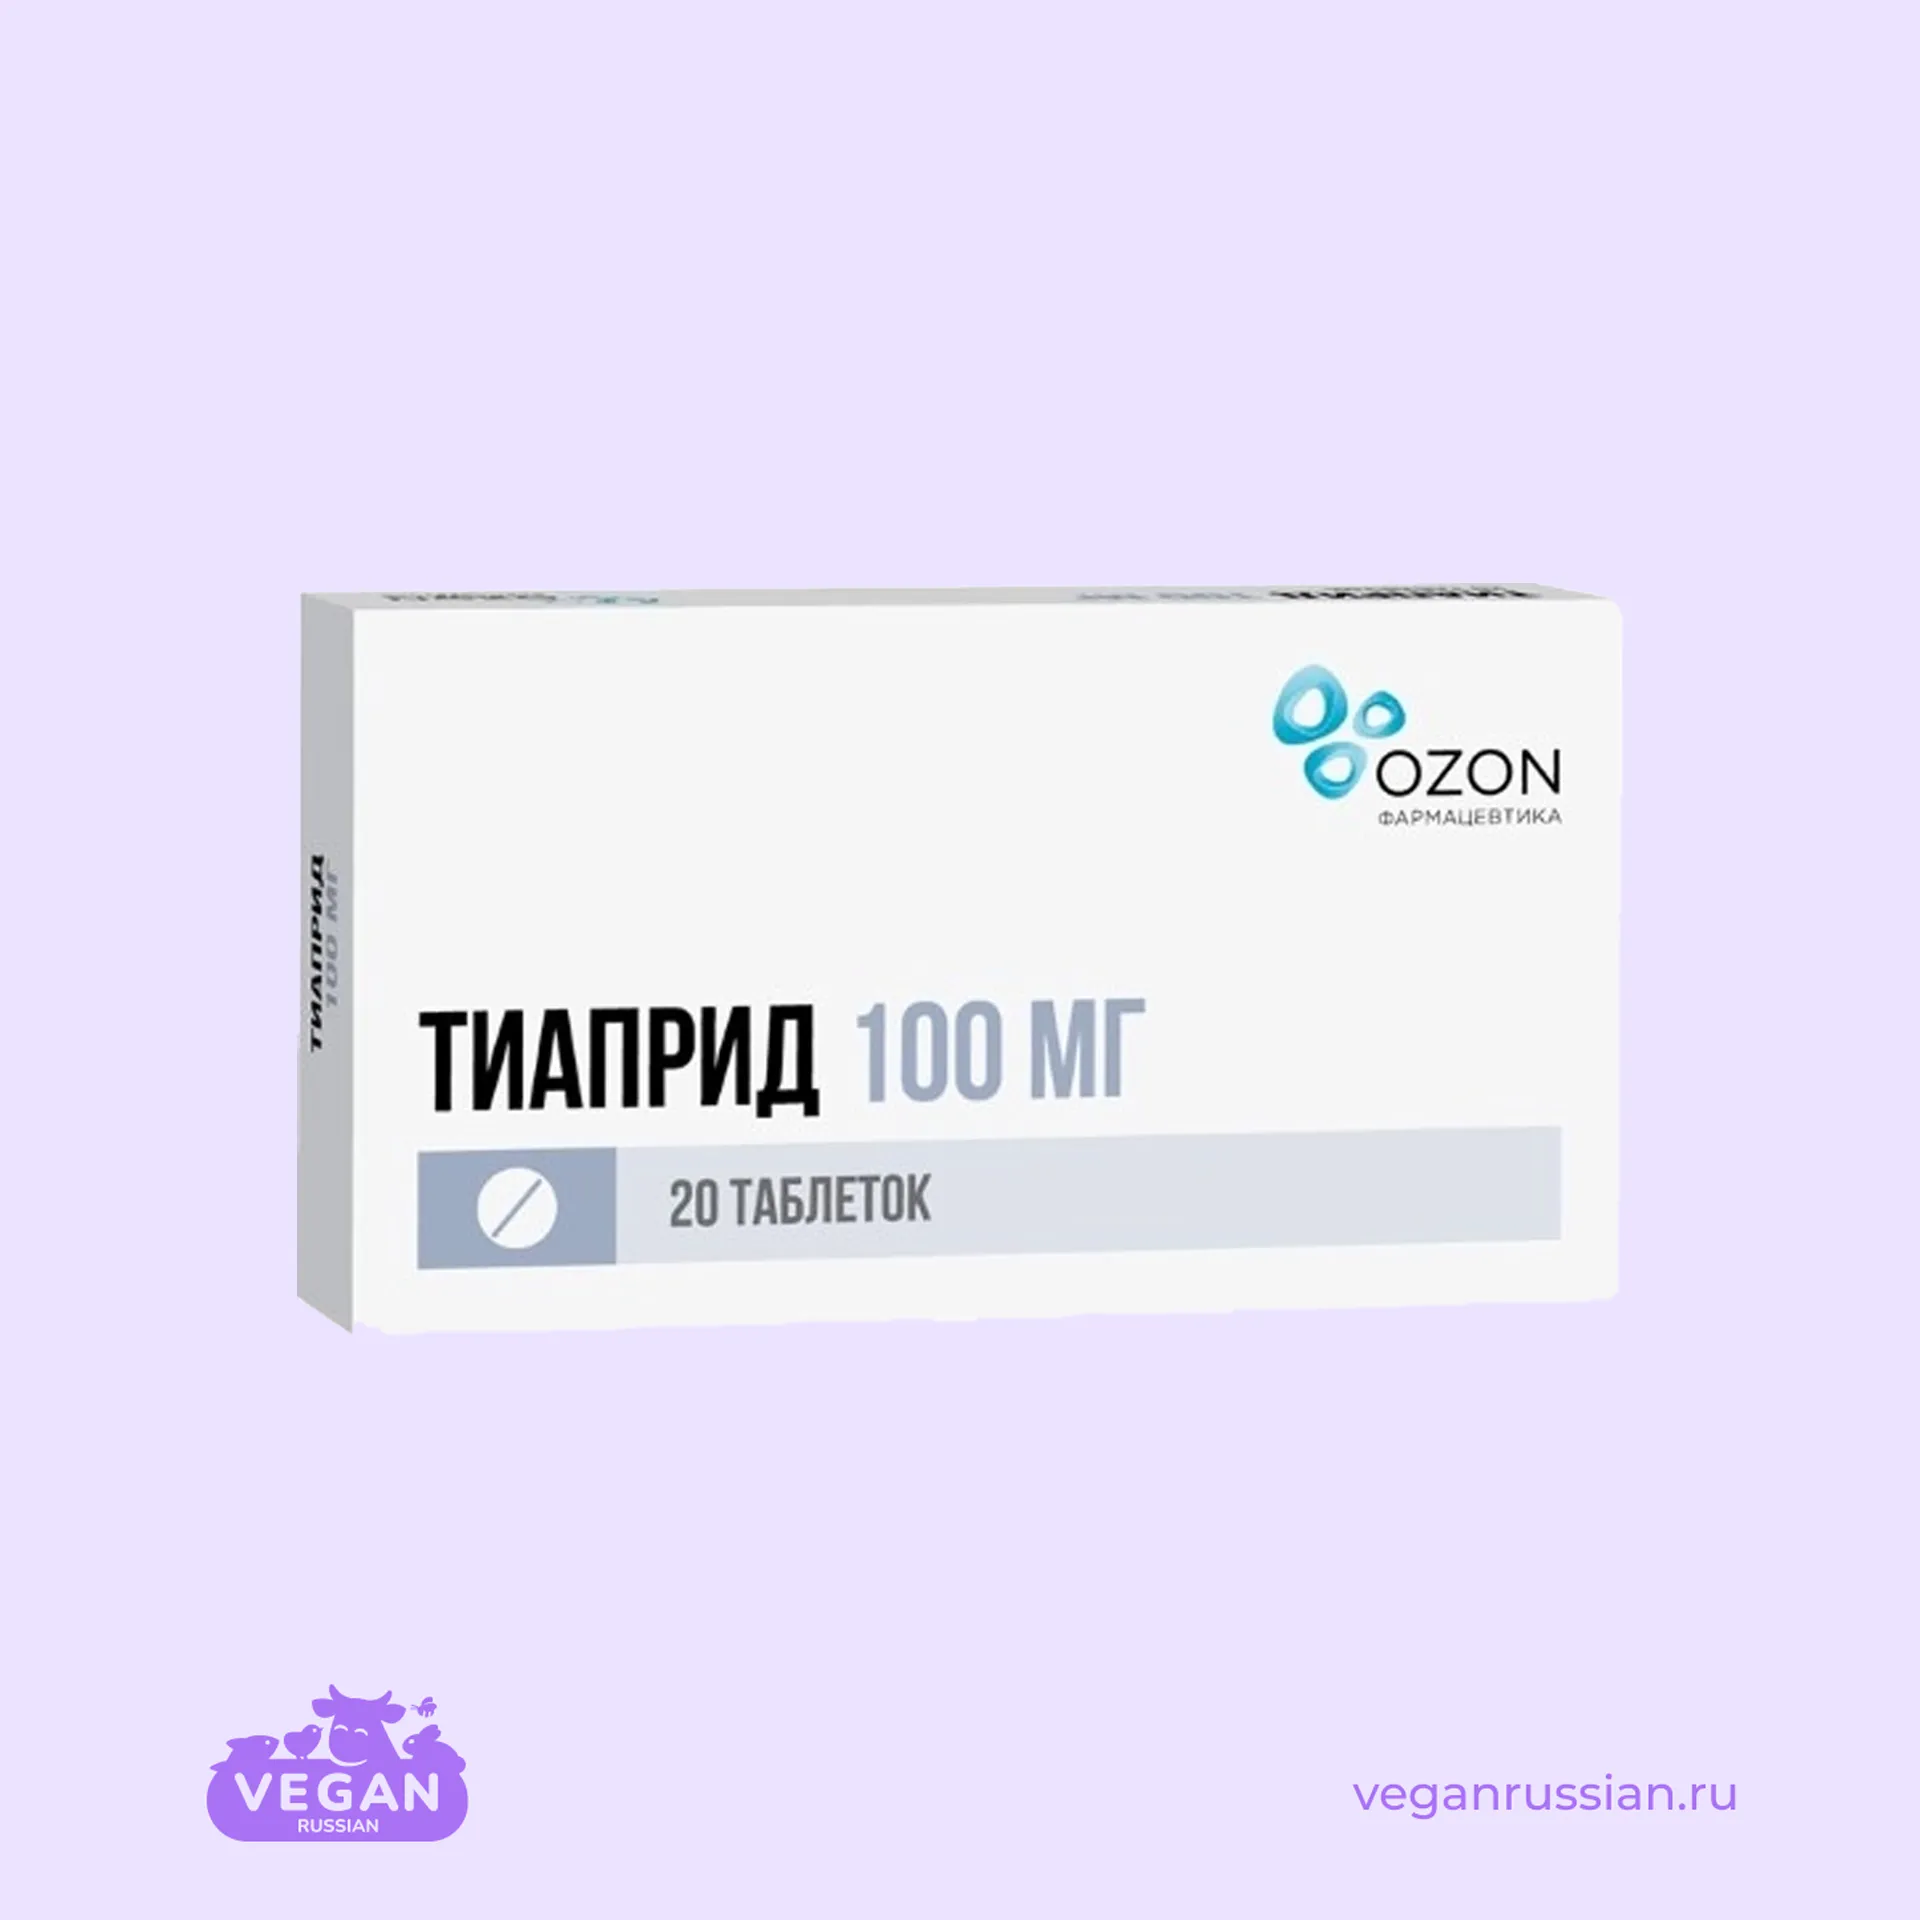 Тиаприд Озон 20 шт 100 мг